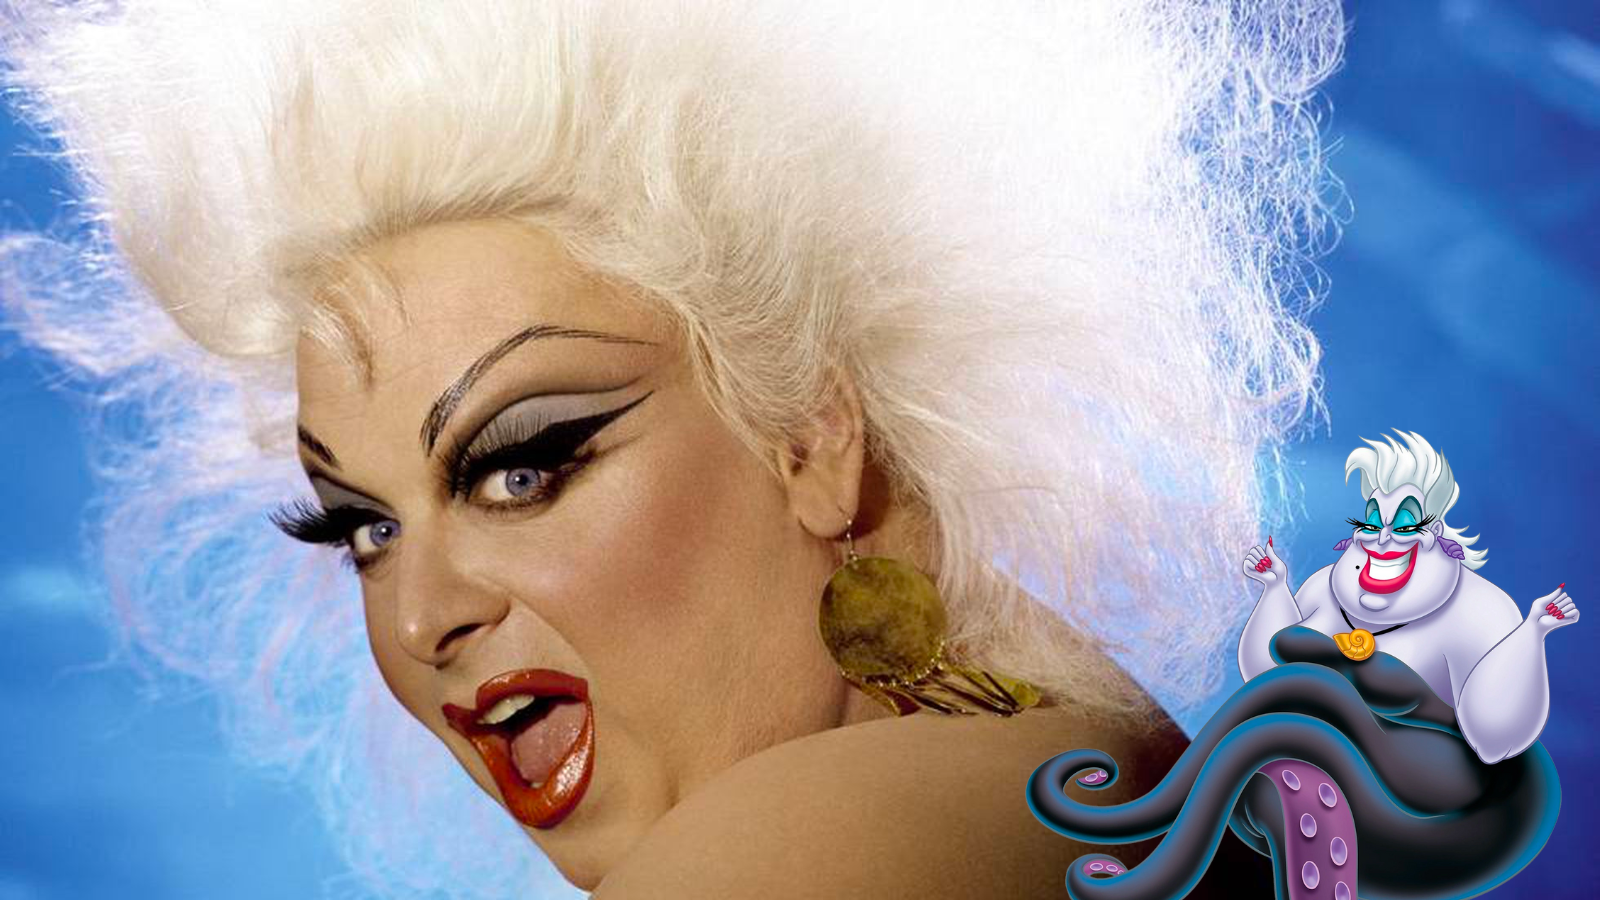 Divine La Icónica Drag Queen Que Inspiró A Una Villana De Disney Oceandrive 